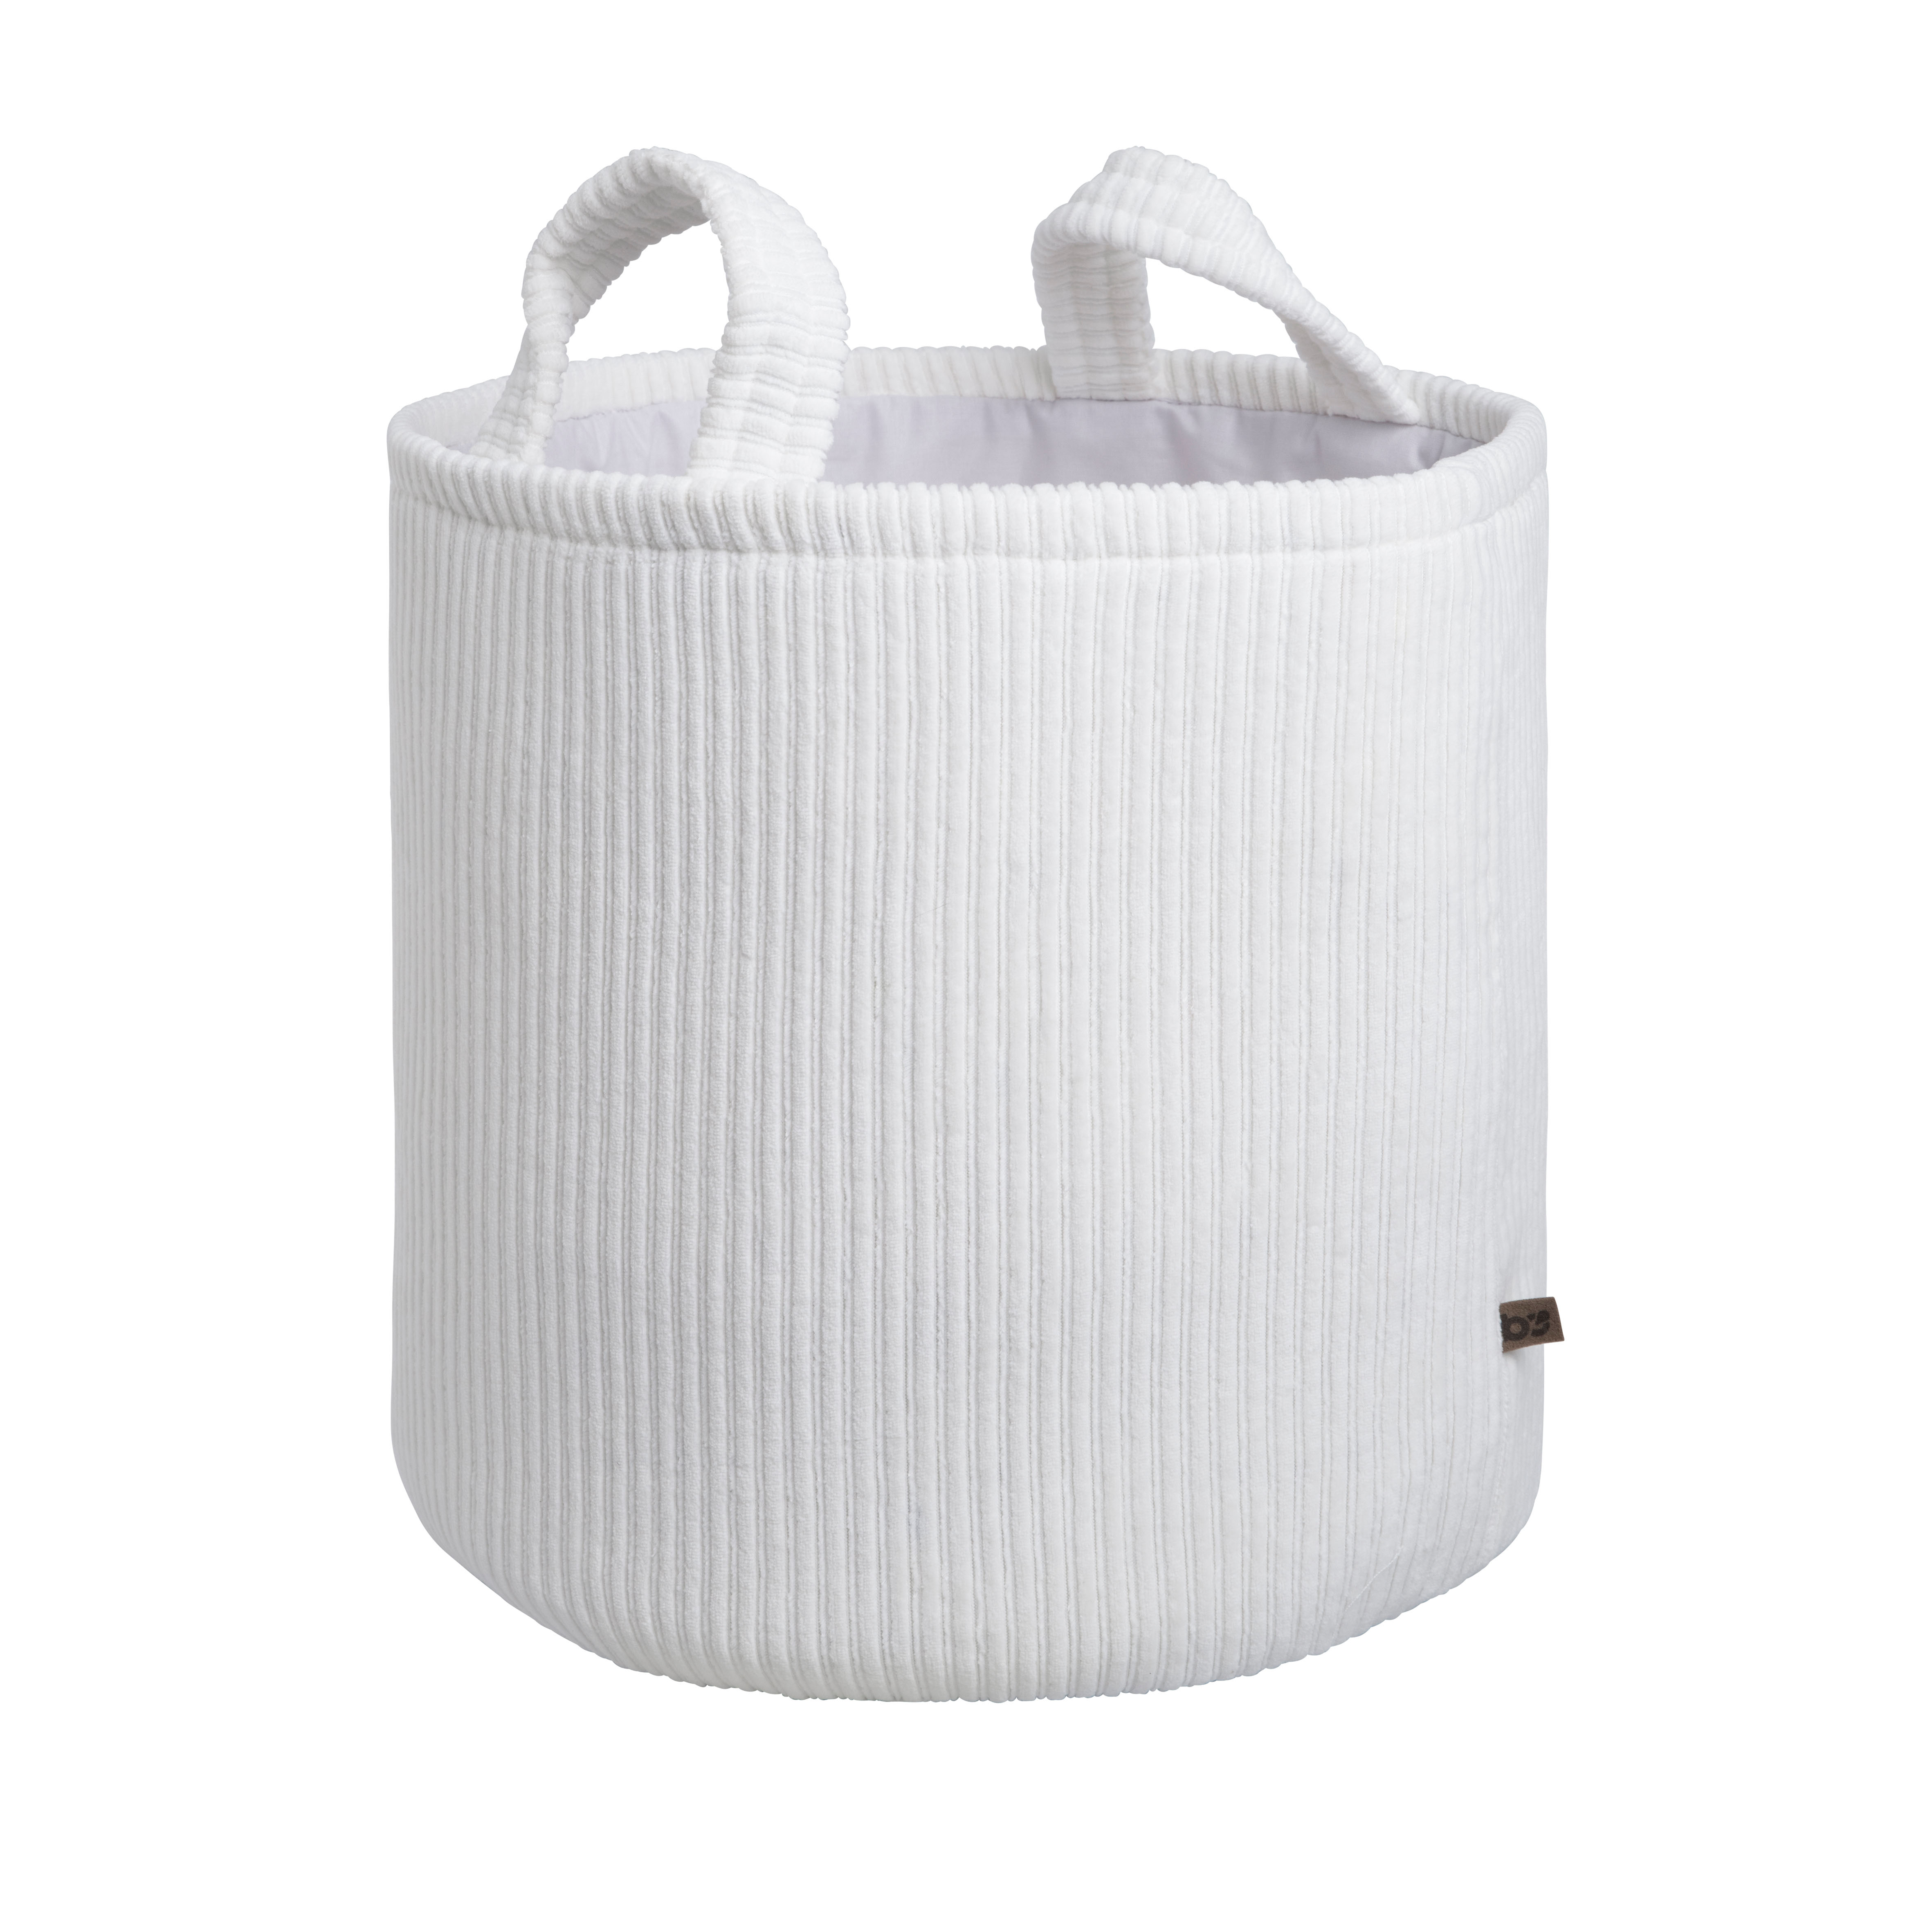 Storage basket Sense white - Ø38 cm